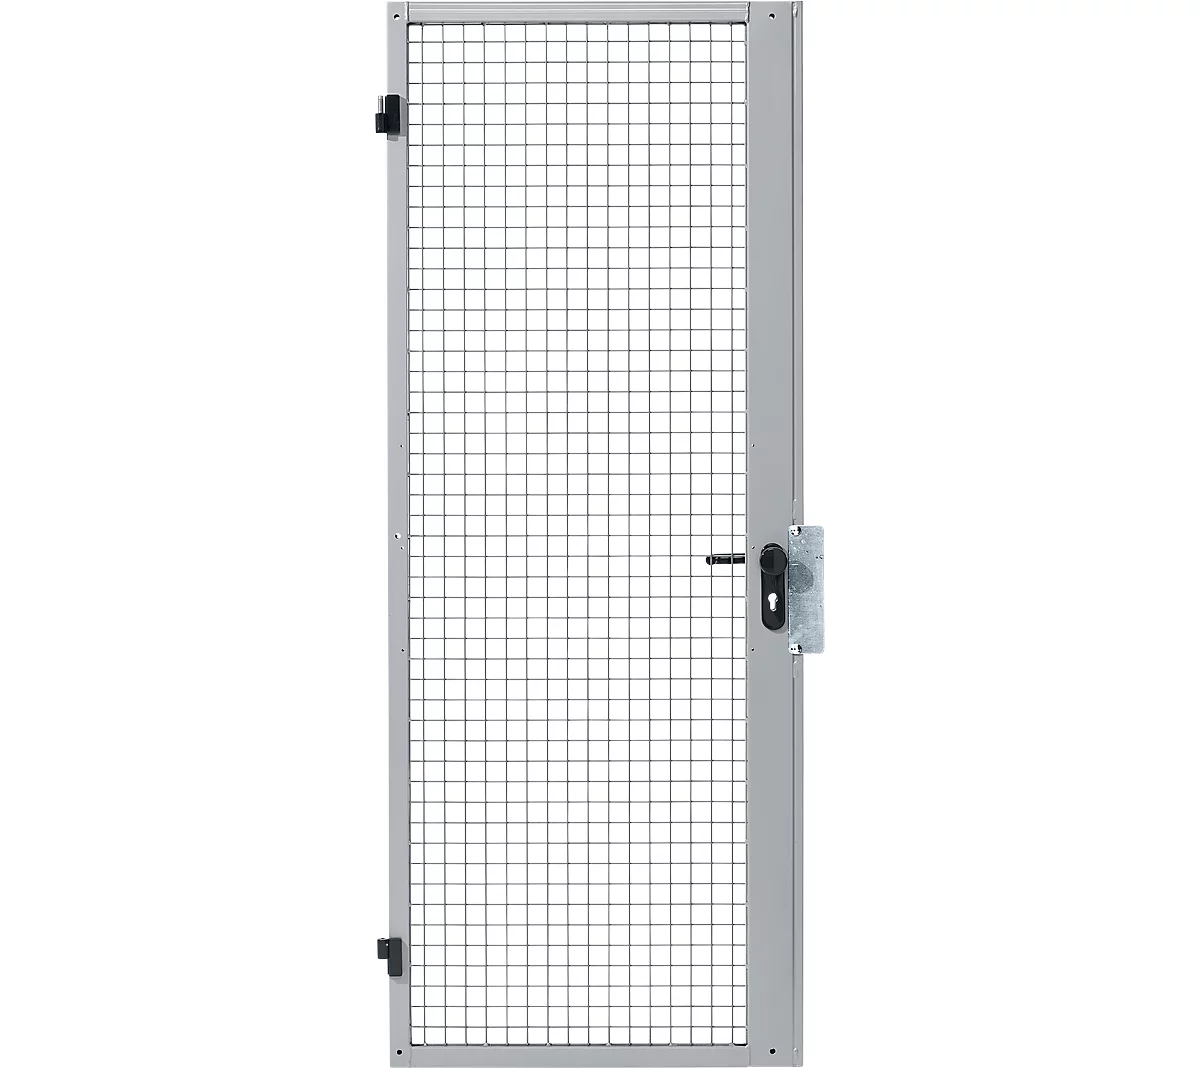 Puerta batiente de una hoja, para sistema de paredes separadoras, bisagra de puerta derecha/izquierda, An 850 x Al 2070 mm, con cerradura de embutir, plateado claro